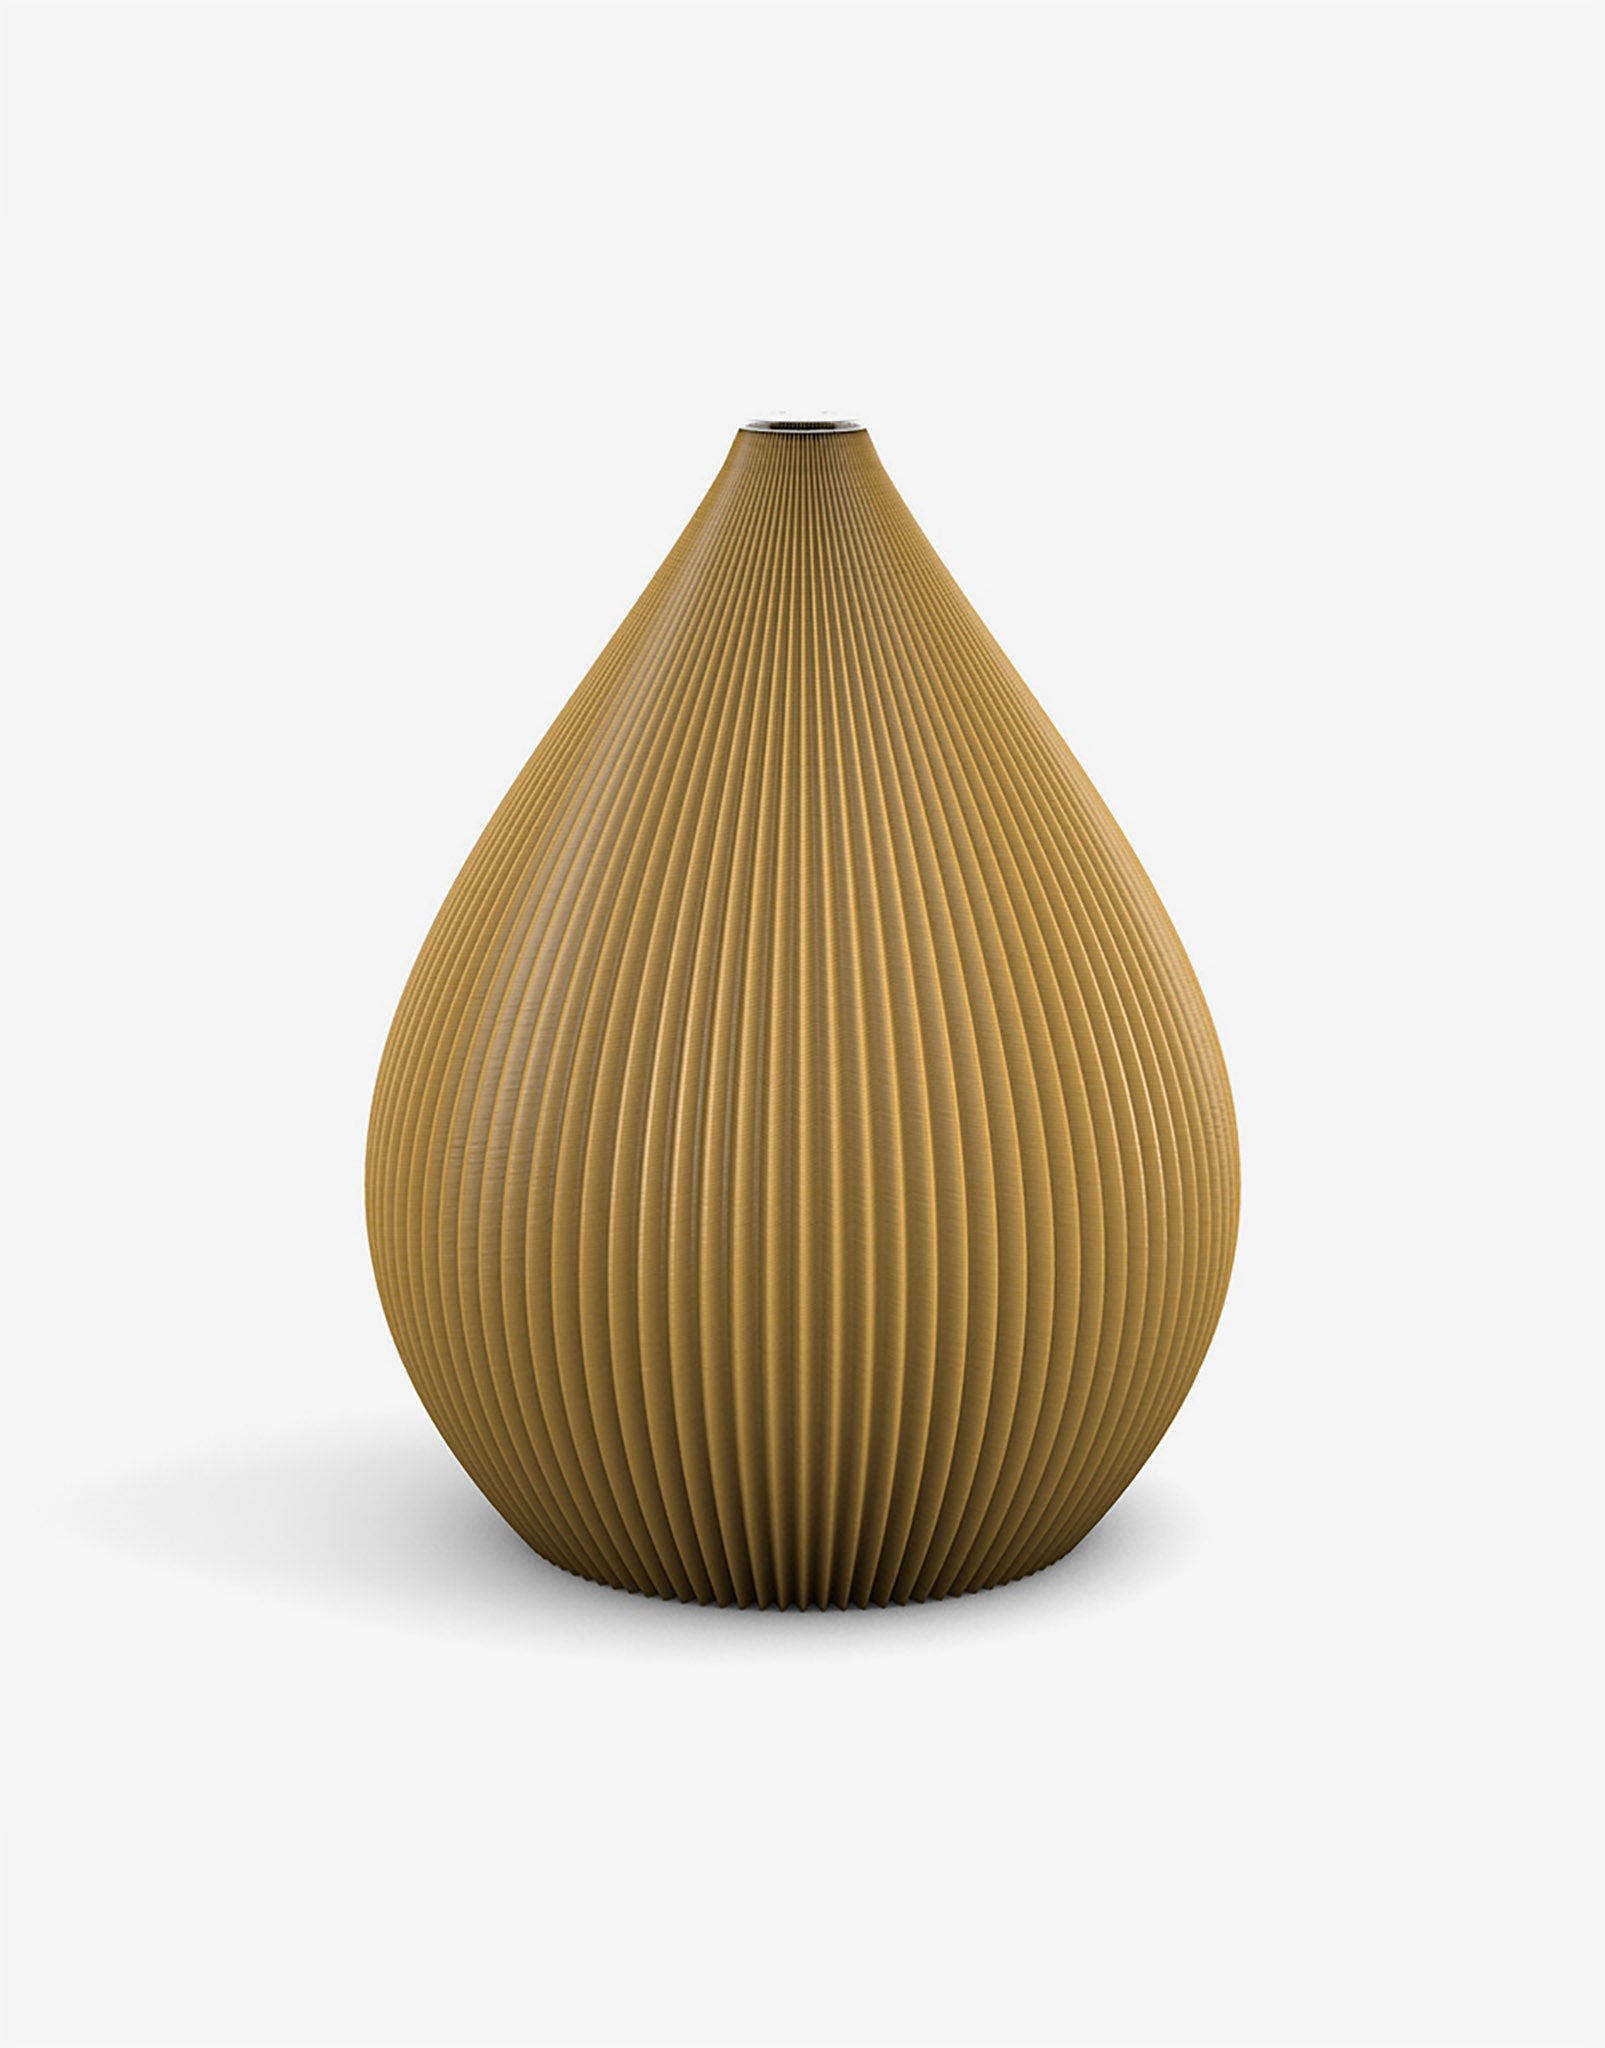 Ovale 3D Druck Kunststoff Vase Balloon von Recozy mit Glaseinsatz, Farbe: Golden Orange, Größe: M